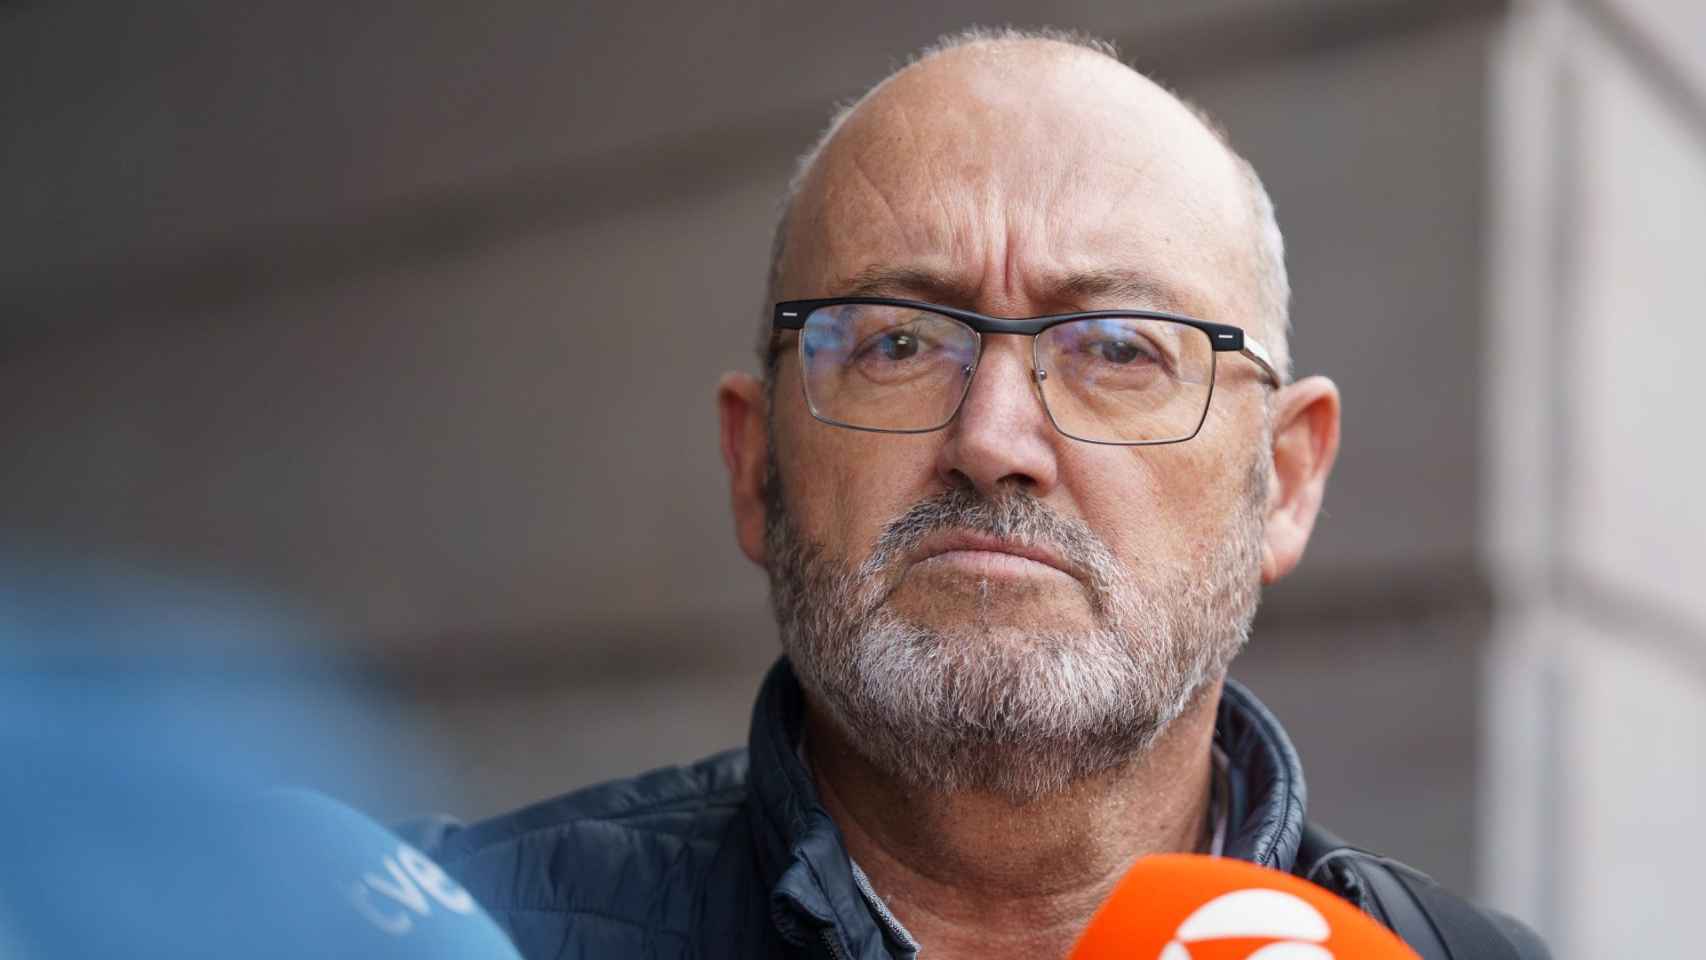 El exdiputado del PSOE Juan Bernardo Fuentes Curbelo, investigado por el 'caso Mediador', tras declarar ante la juez de Santa Cruz de Tenerife  el pasado miércoles.